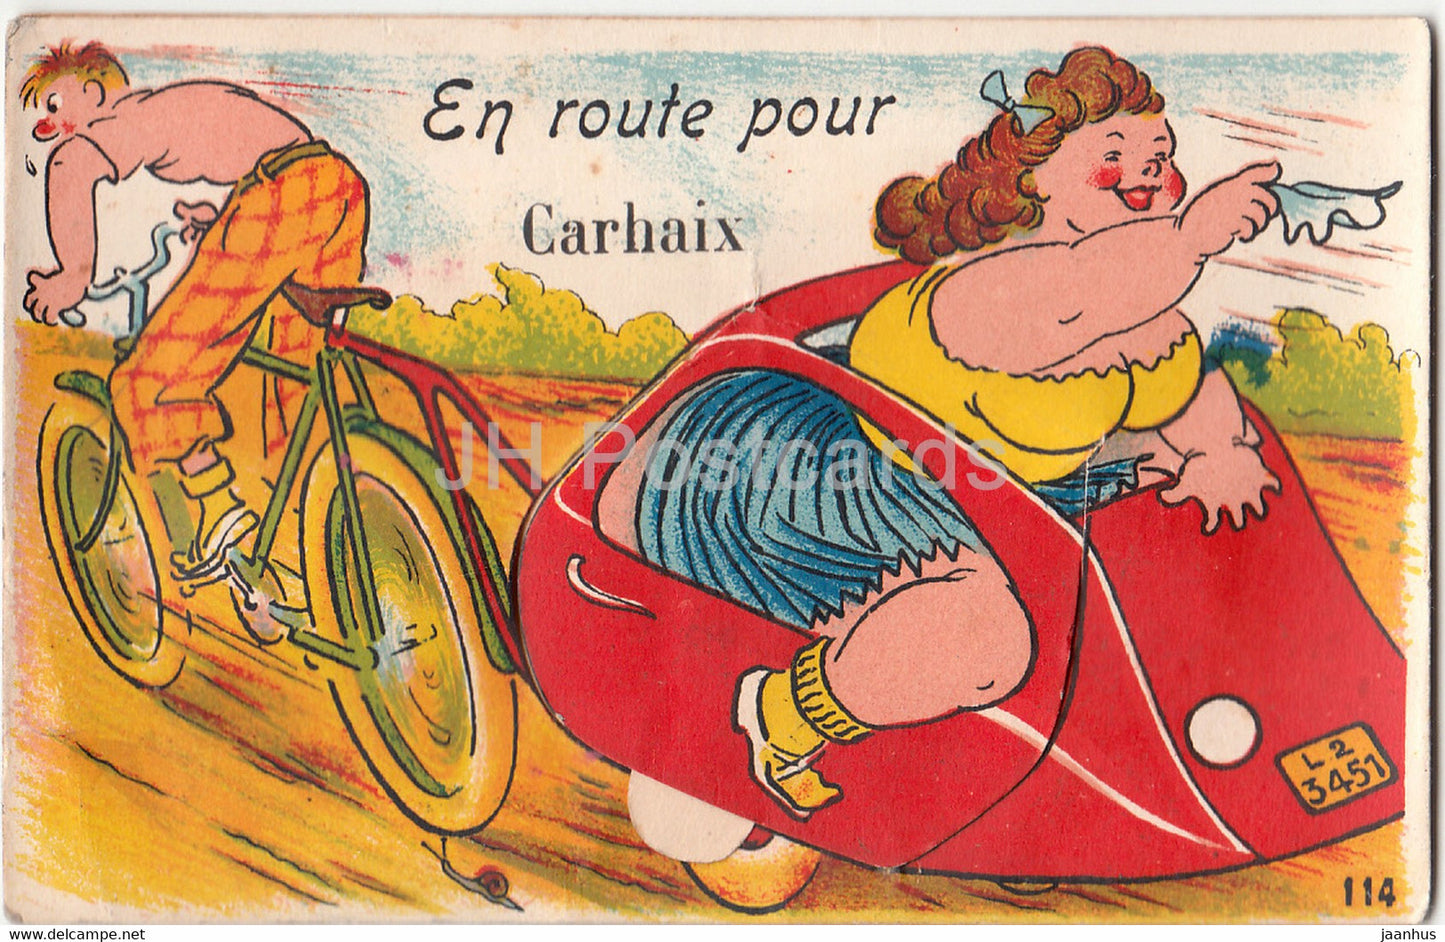 En route pour Carhaix - humour - old postcard - France - unused - JH Postcards